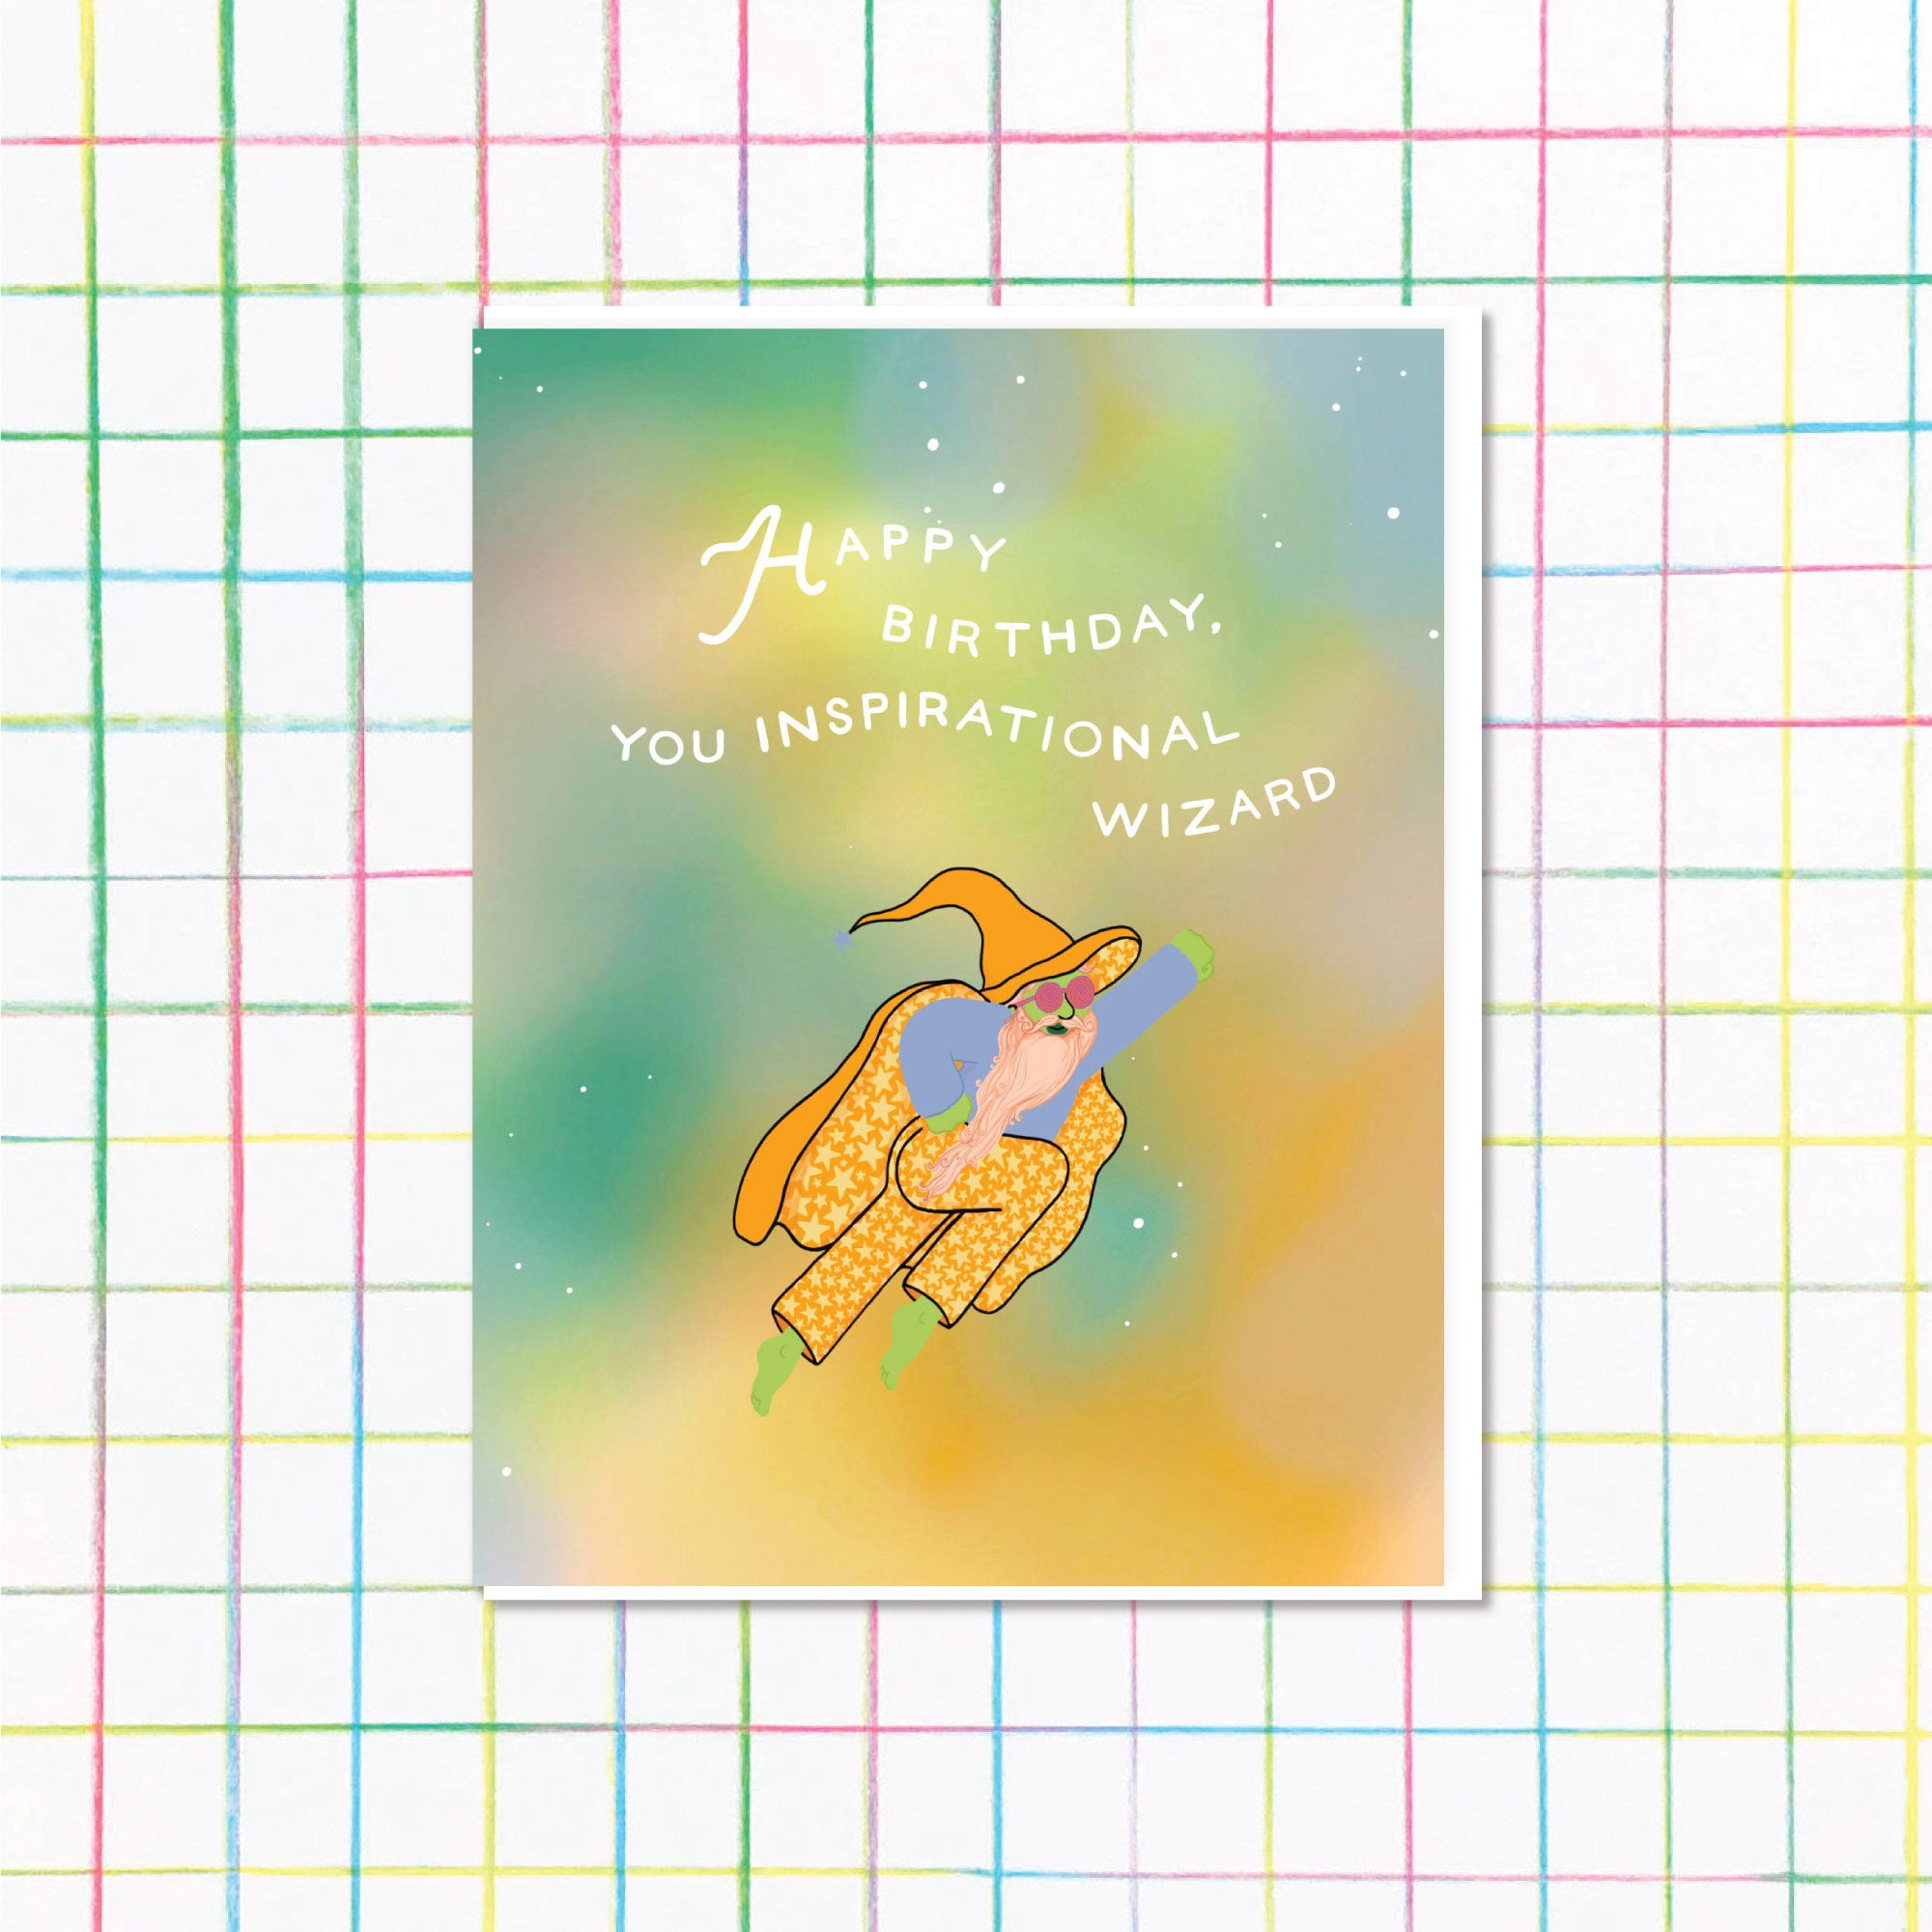 Happy Birthday Inspirational Wizard Card